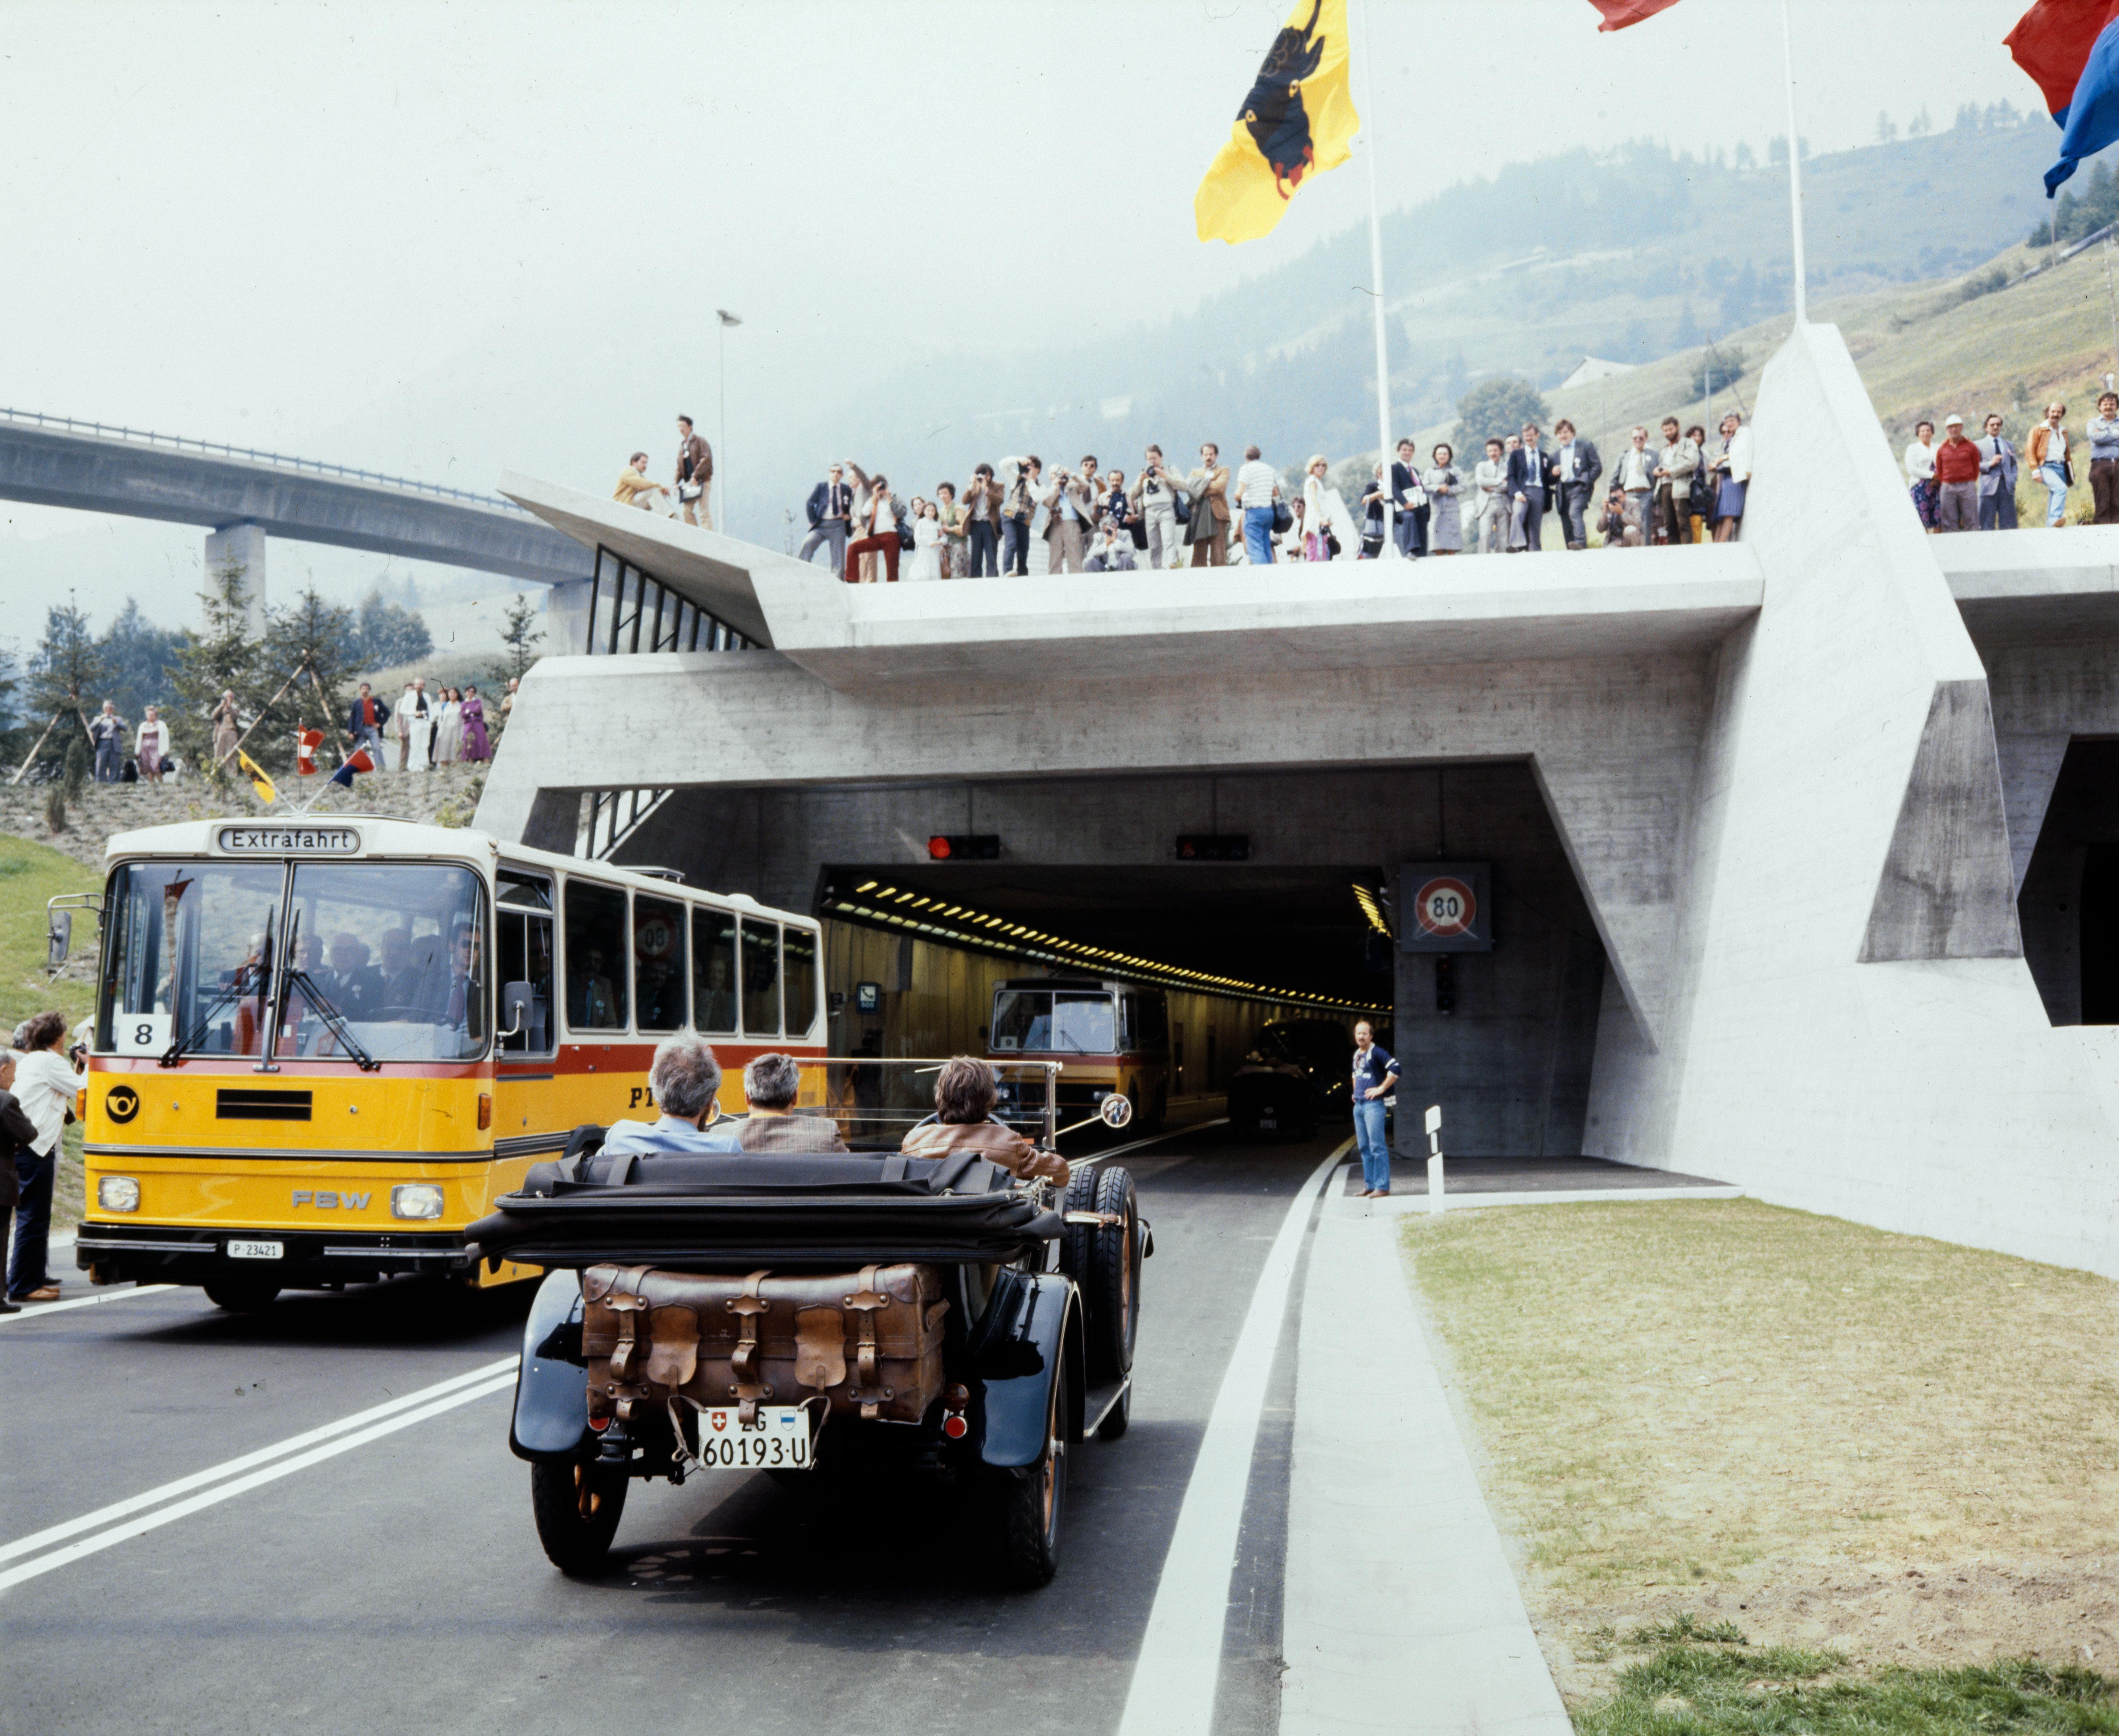 Le 5 septembre 1980, lors de l'inauguration du tunnel routier du S. Gothard, on a assisté à un chef-d'œuvre d'ingénierie qui a nécessité 10 ans de construction et 20 ans de planification. Le projet du tunnel était signé par Giovanni Lombardi.